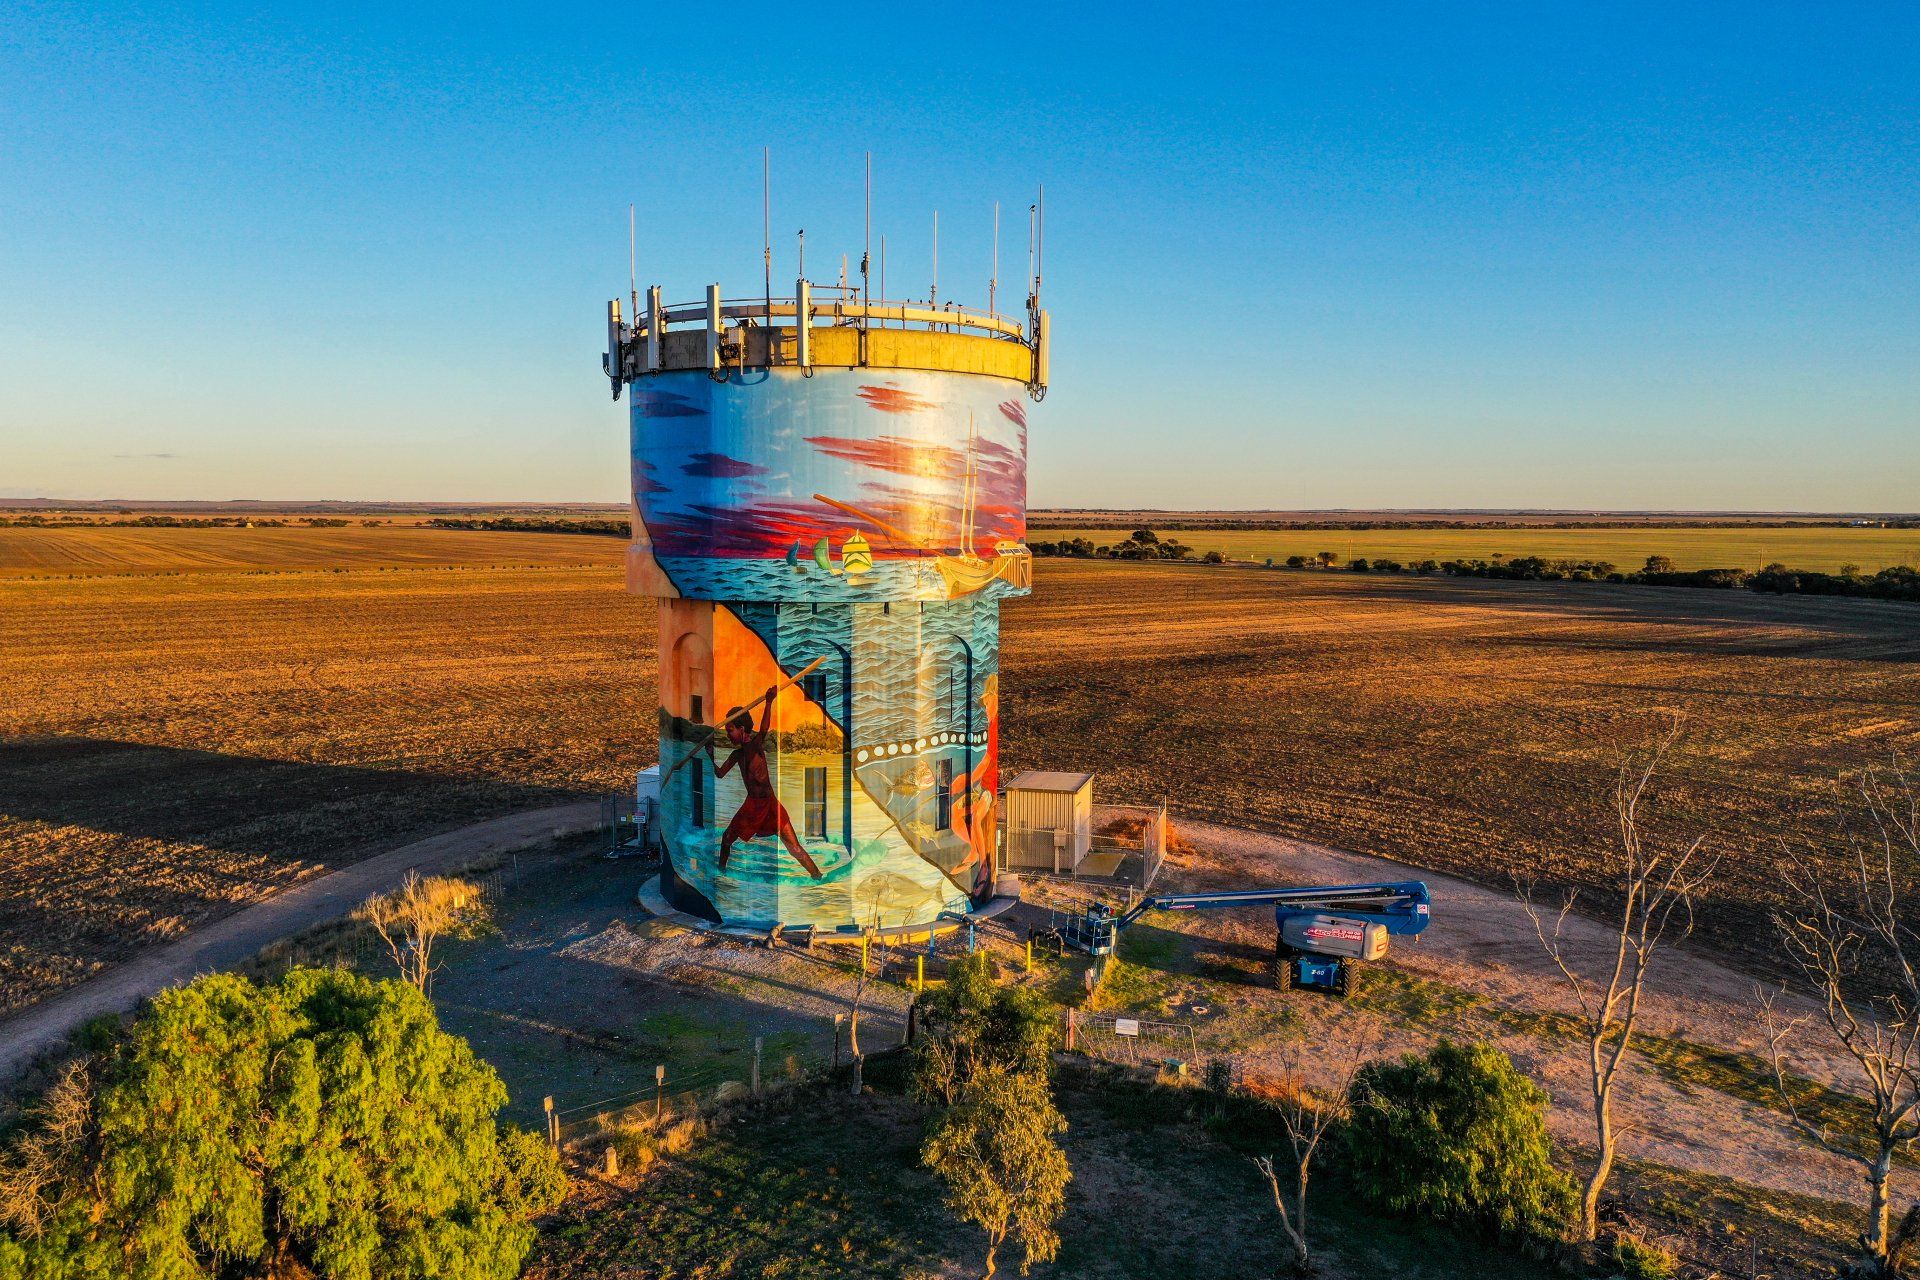 South Australian Water Tower Art, Australian Silo Art Trail